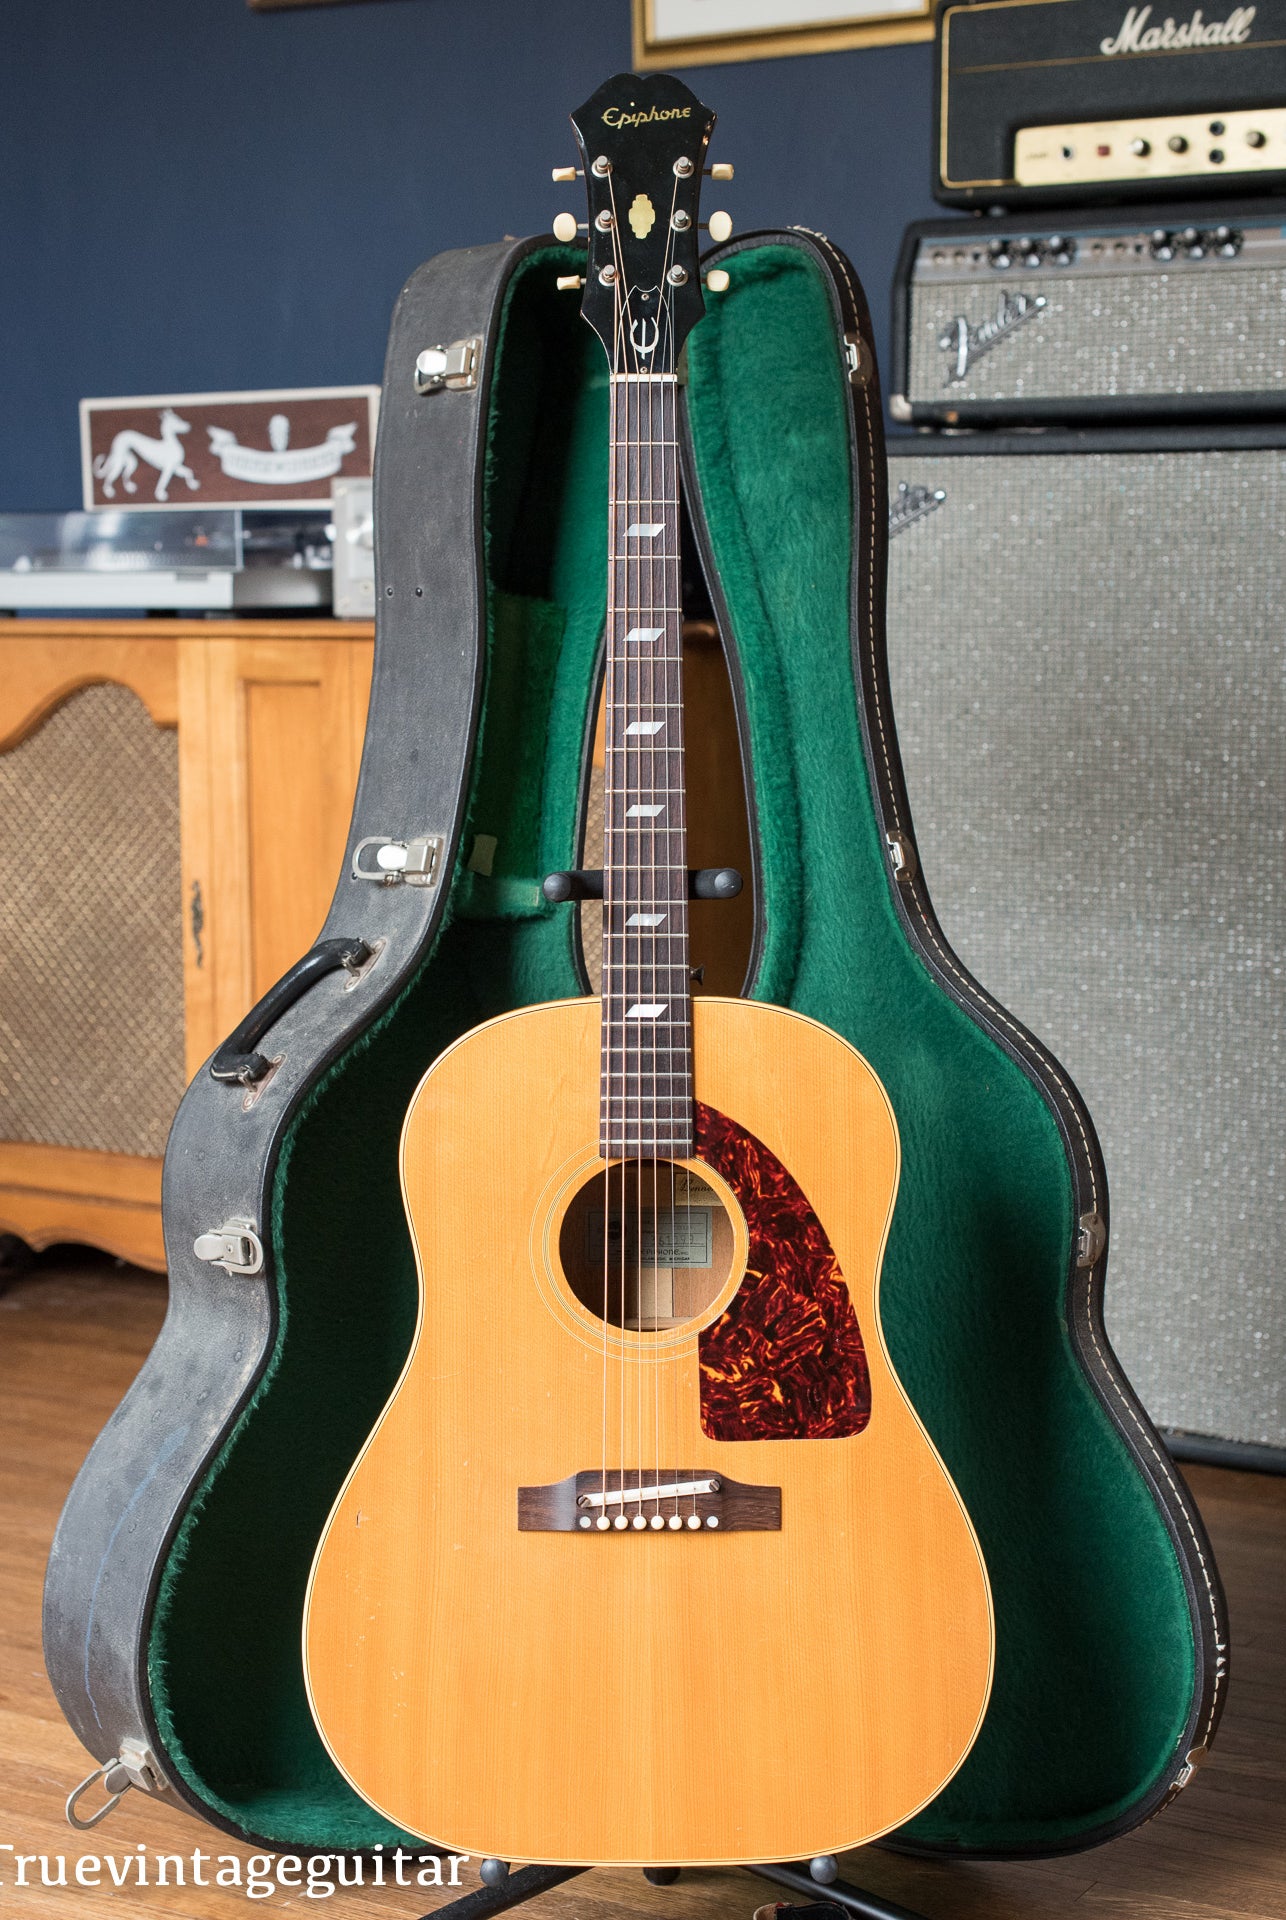 Vintage 1965 Epiphone FT-79 N Texan acoustic guitar